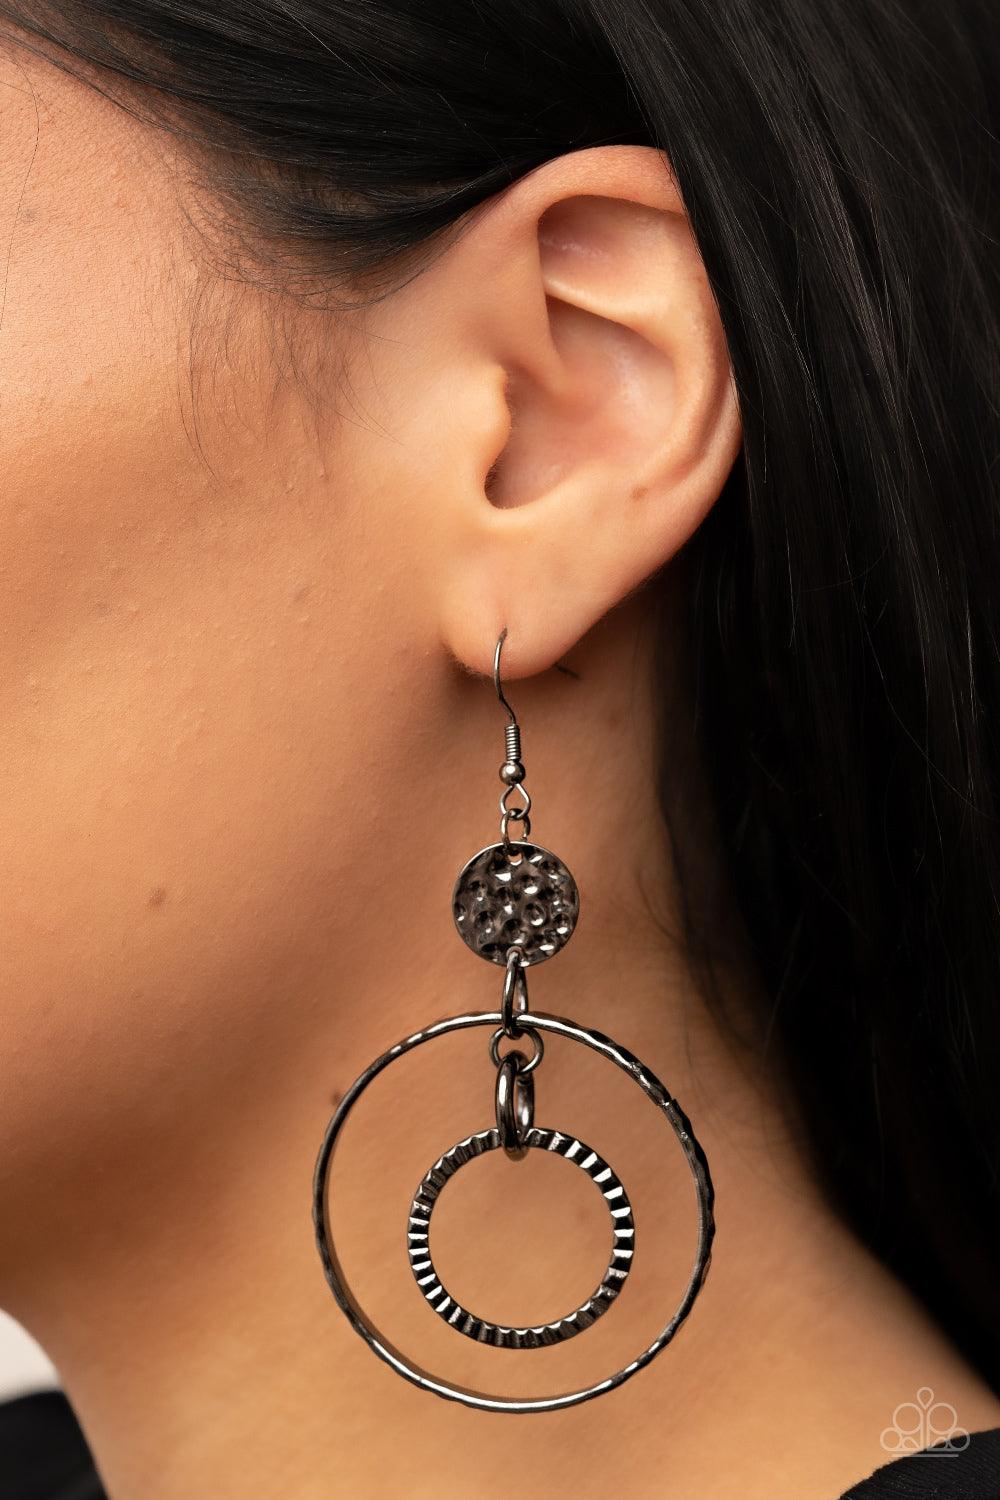 Mechanical Mecca Black Earrings - Jewelry by Bretta